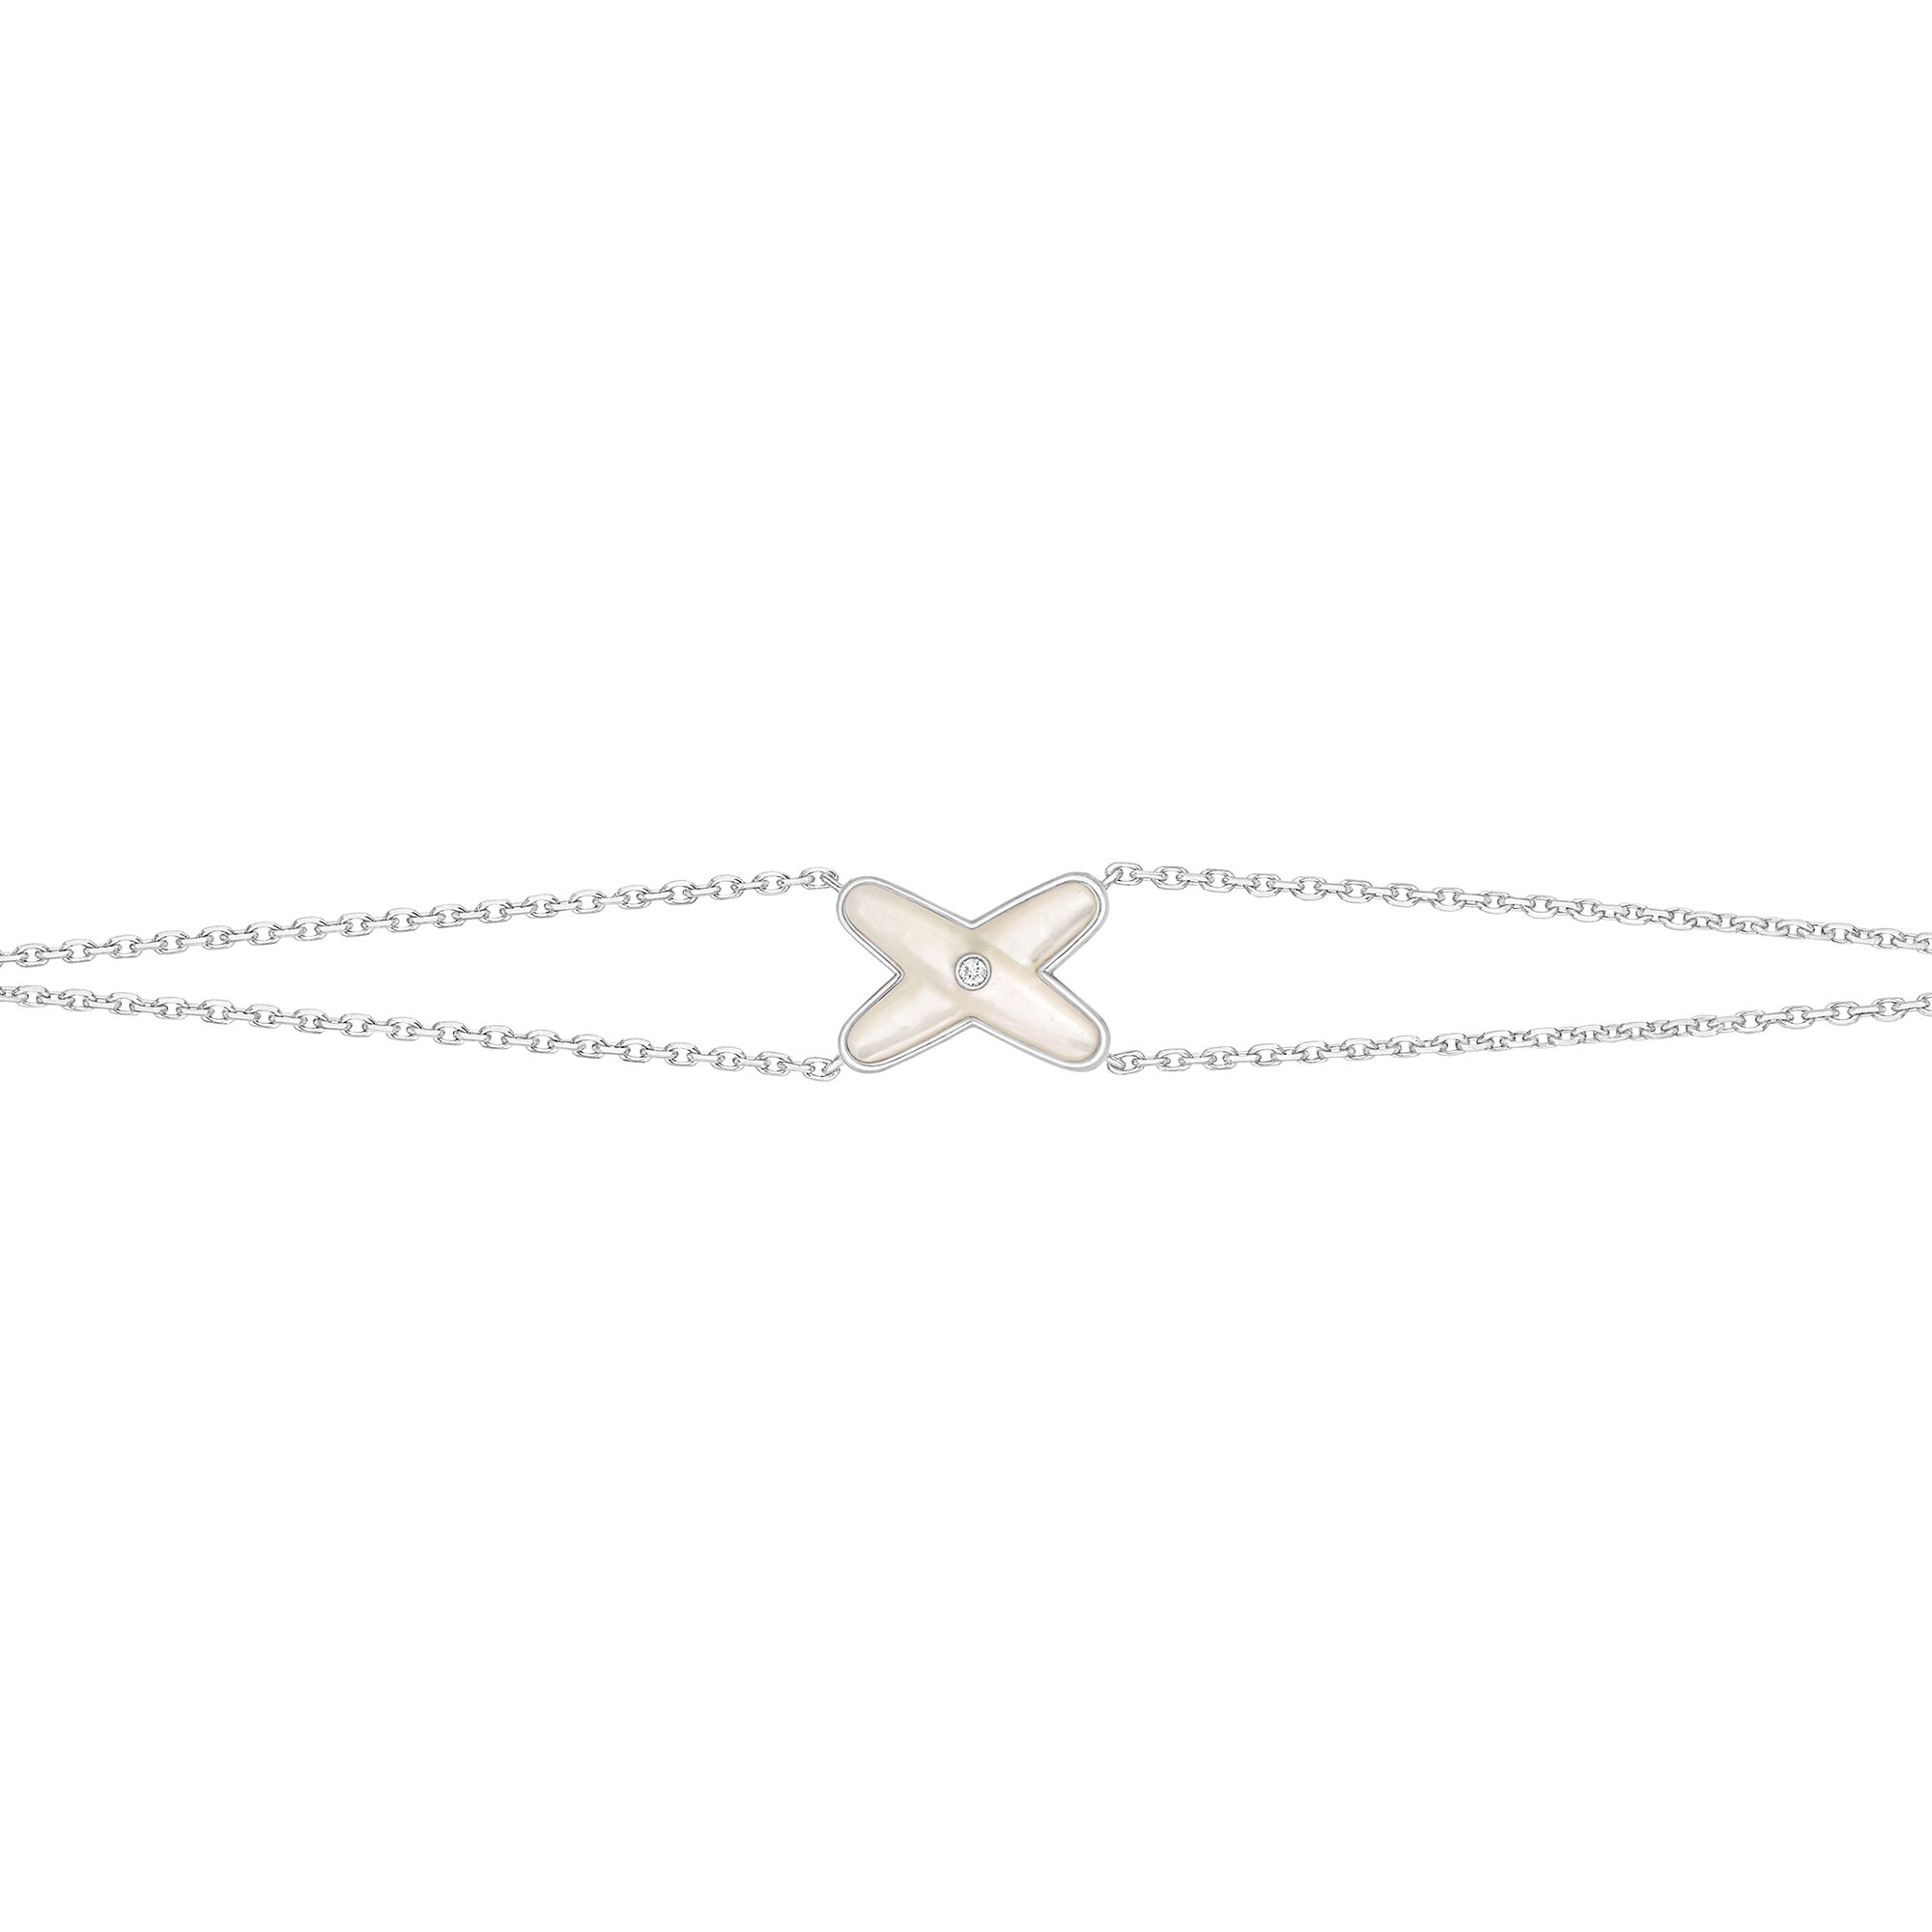 Jeux de Liens White Gold Mother-Of-Pearl Diamond Bracelet | Chaumet